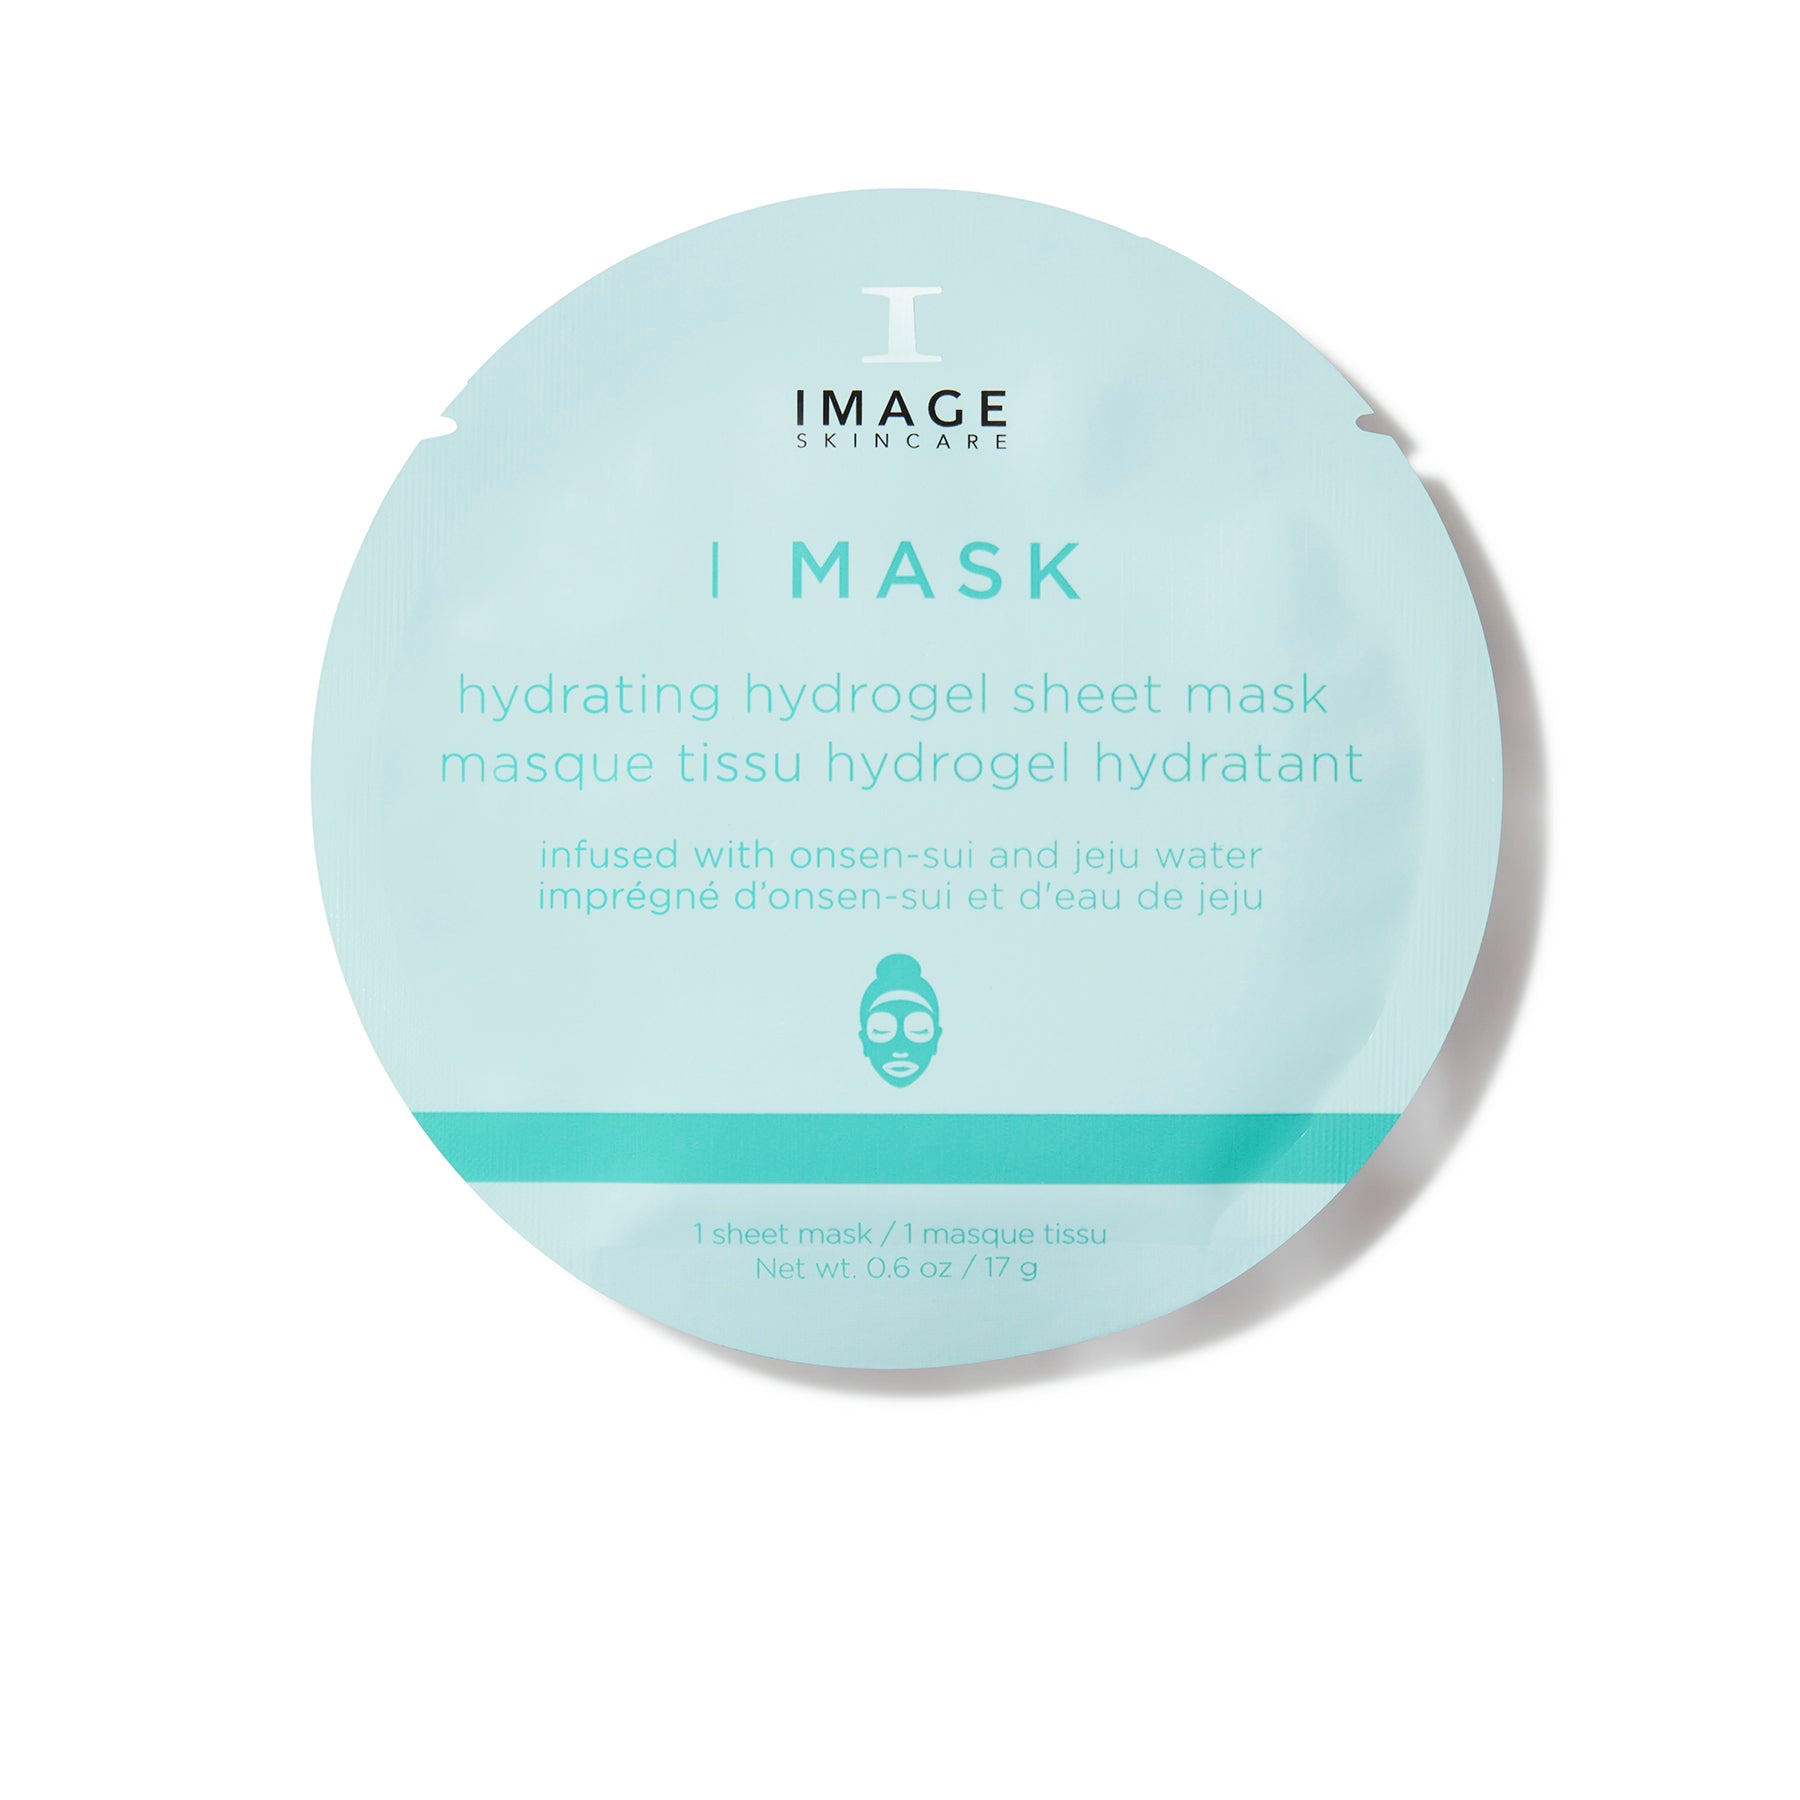 Image Skincare I Mask Hydrating Hydrogel Sheet Maske